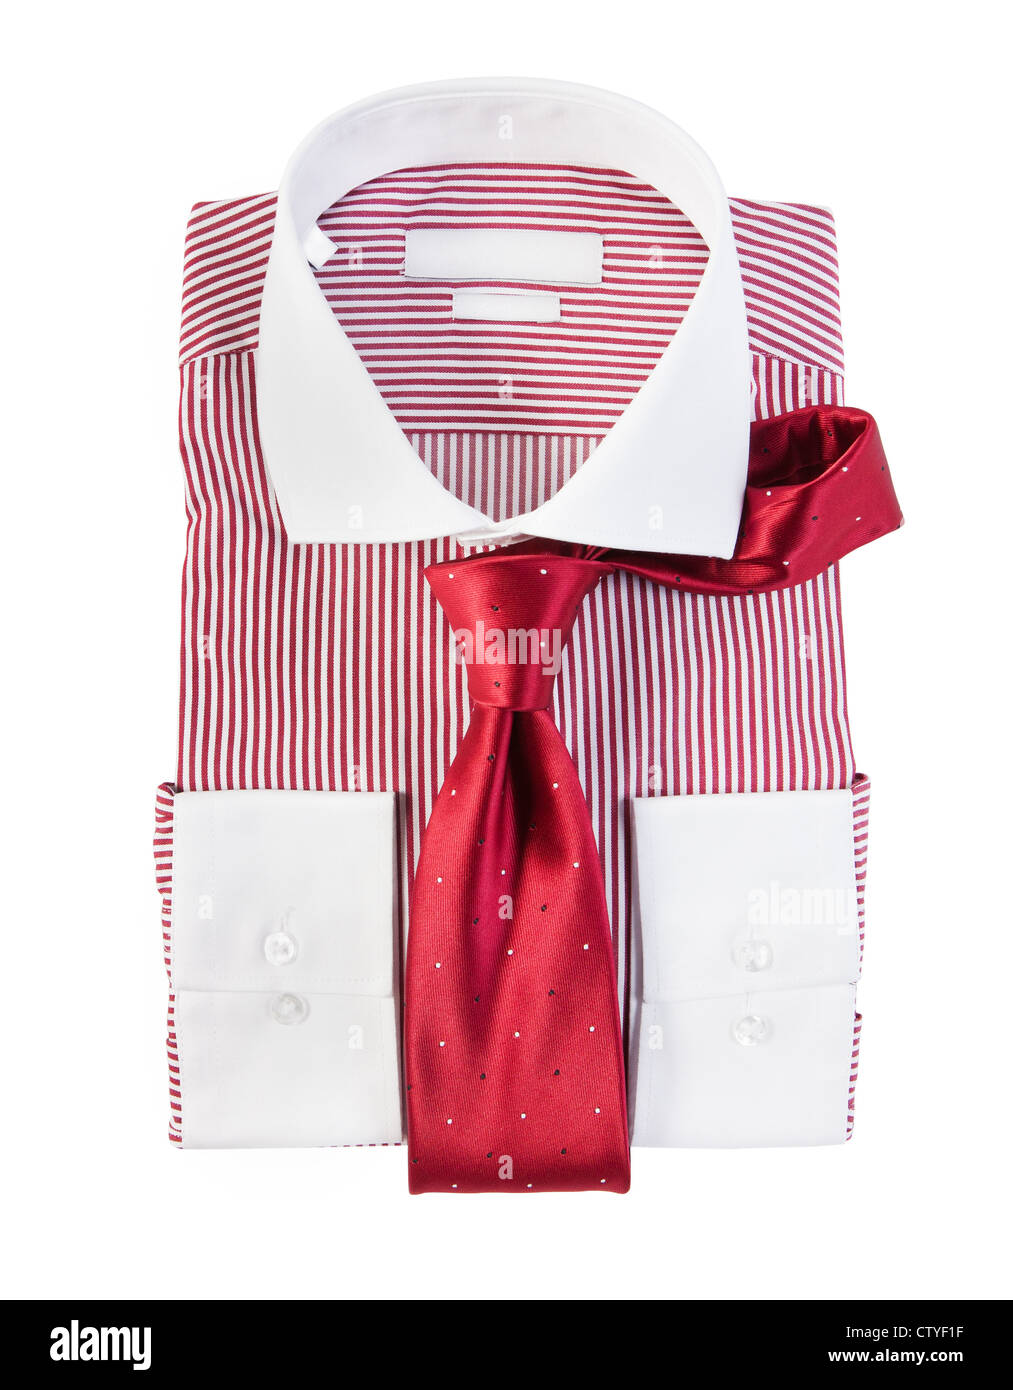 La nuova rossa e bianca a strisce shirt isolati su sfondo bianco Foto Stock